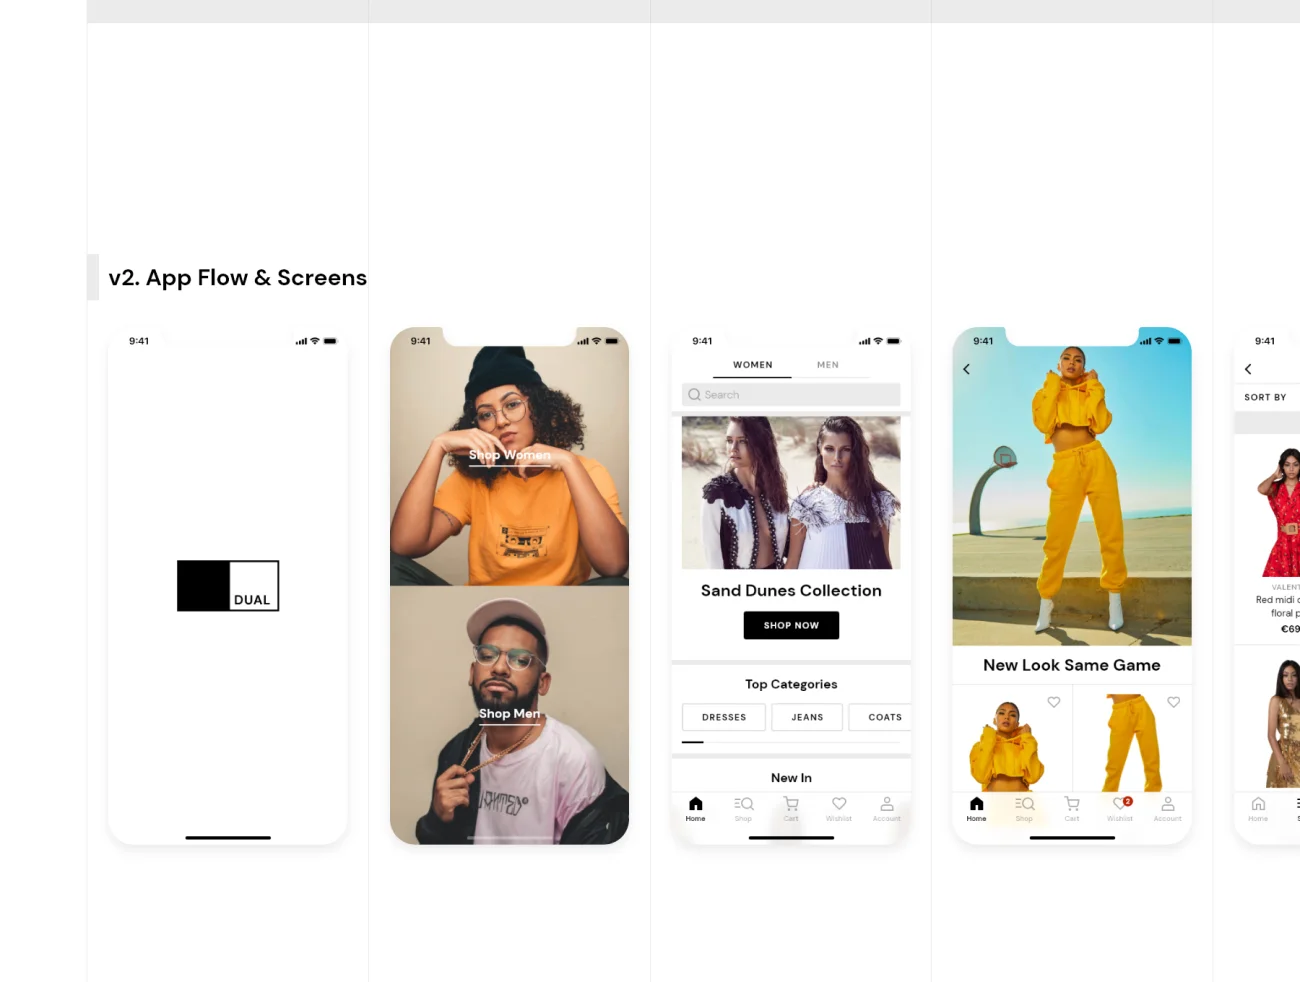 70屏服饰潮流电子商务iOS应用UI设计工具包 DUAL — e-commerce iOS UI Kit .xd插图11